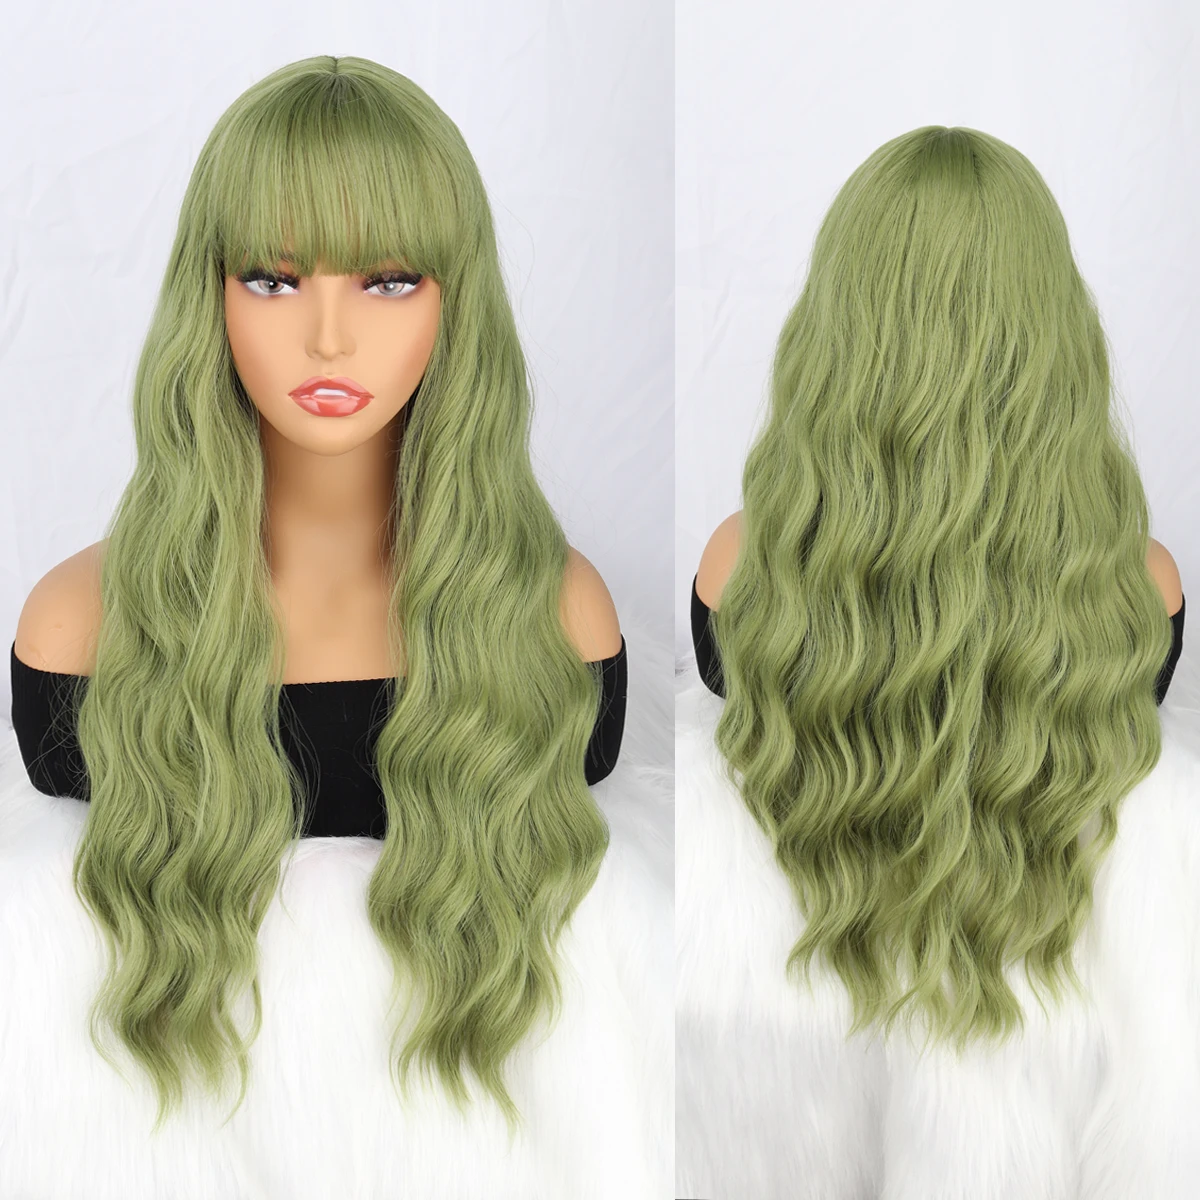 

Длинный зеленый парик с челкой, волнистые завитые челки, синтетический женский зеленый длинный парик, естественный внешний вид, подходит для ежедневного использования